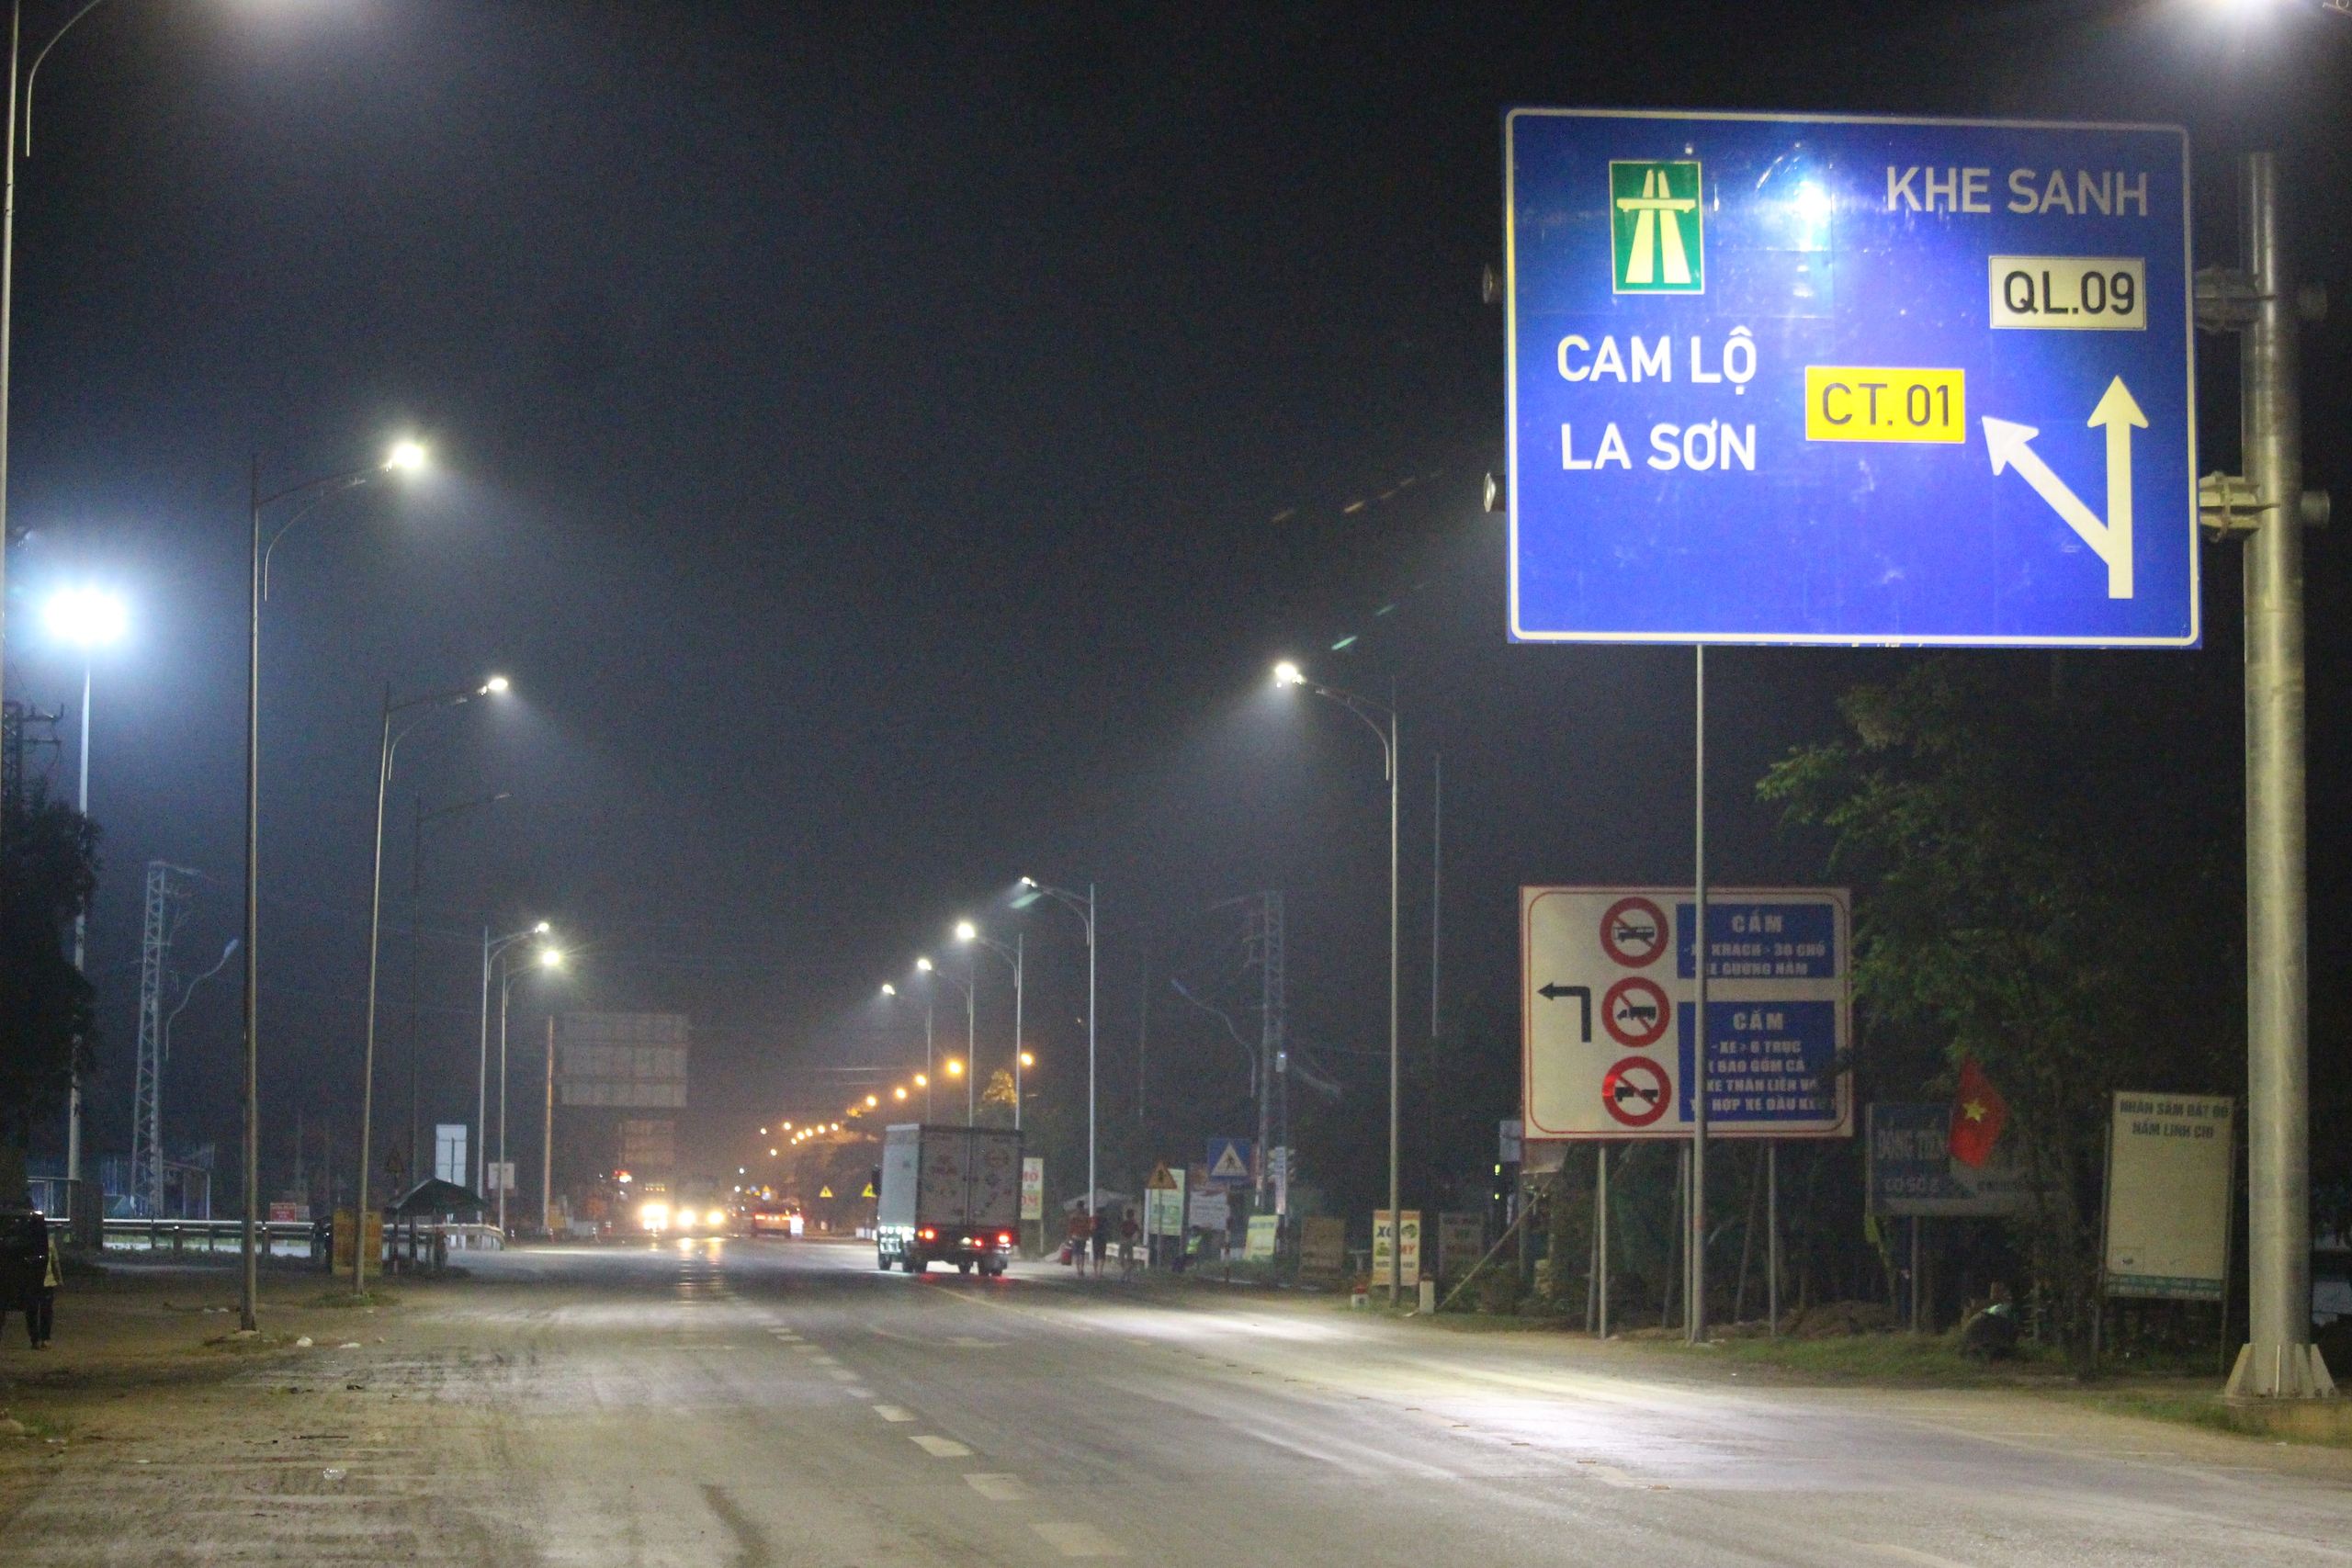 Cắm loạt biển báo phương tiện không vào cao tốc Cam Lộ - La Sơn- Ảnh 6.